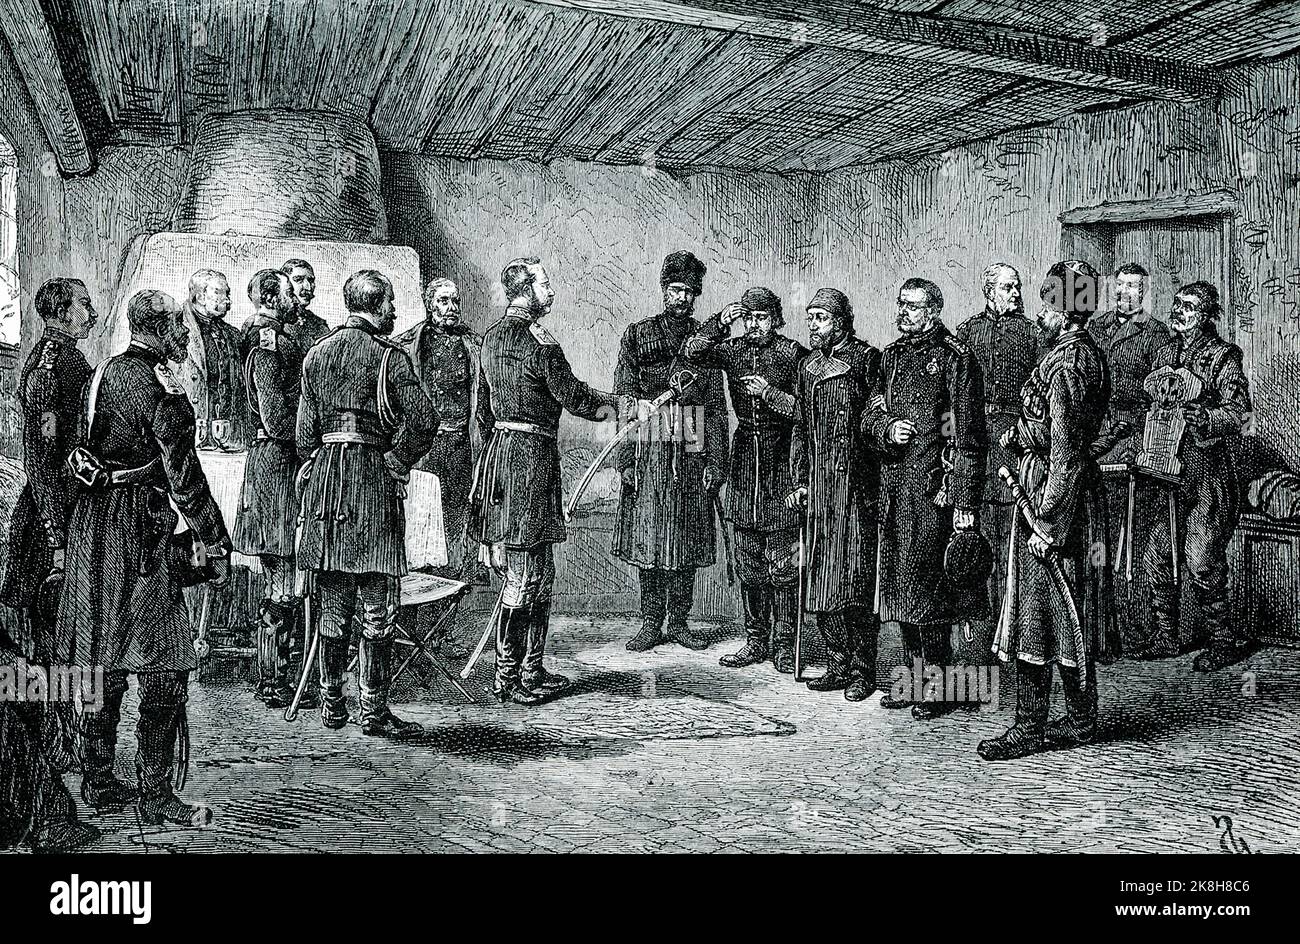 ALEXANDER II DIE WIEDERHERSTELLUNG DES OSMAN PASCHA-SCHWERTES. – Die einzige ernsthafte Kontrolle, die die Russen trafen, war in Plewna, wo Osman Pascha, der fähigste Soldat der Türkei, seine Truppen in die starke Festung warf und der Rus-Schlampe mehrere Monate lang Widerstand leistete. Als ihn der Hunger zur Kapitulation zwang, stellte der Zar selbst Osmans gefangenes Schwert als Tribut an seine Loyalität und seinen Mut wieder her. Stockfoto